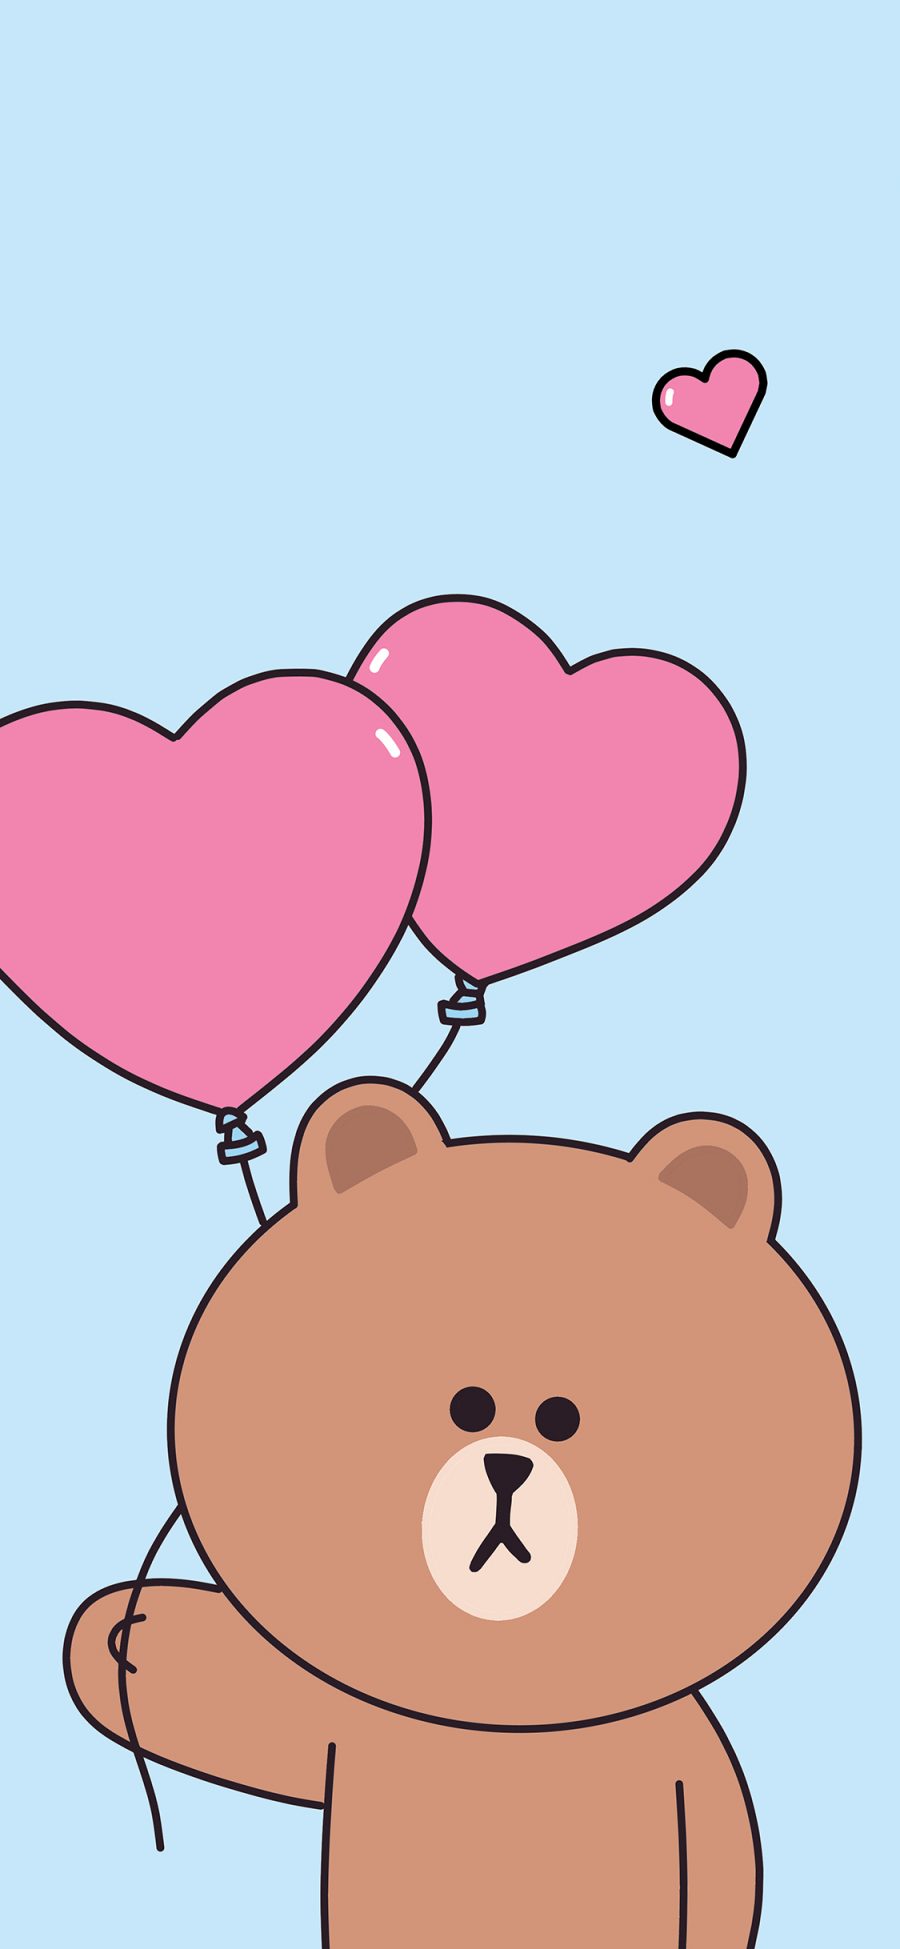 [2436×1125]布朗熊 linefriends 爱心 气球 可爱 蓝色 苹果手机动漫壁纸图片